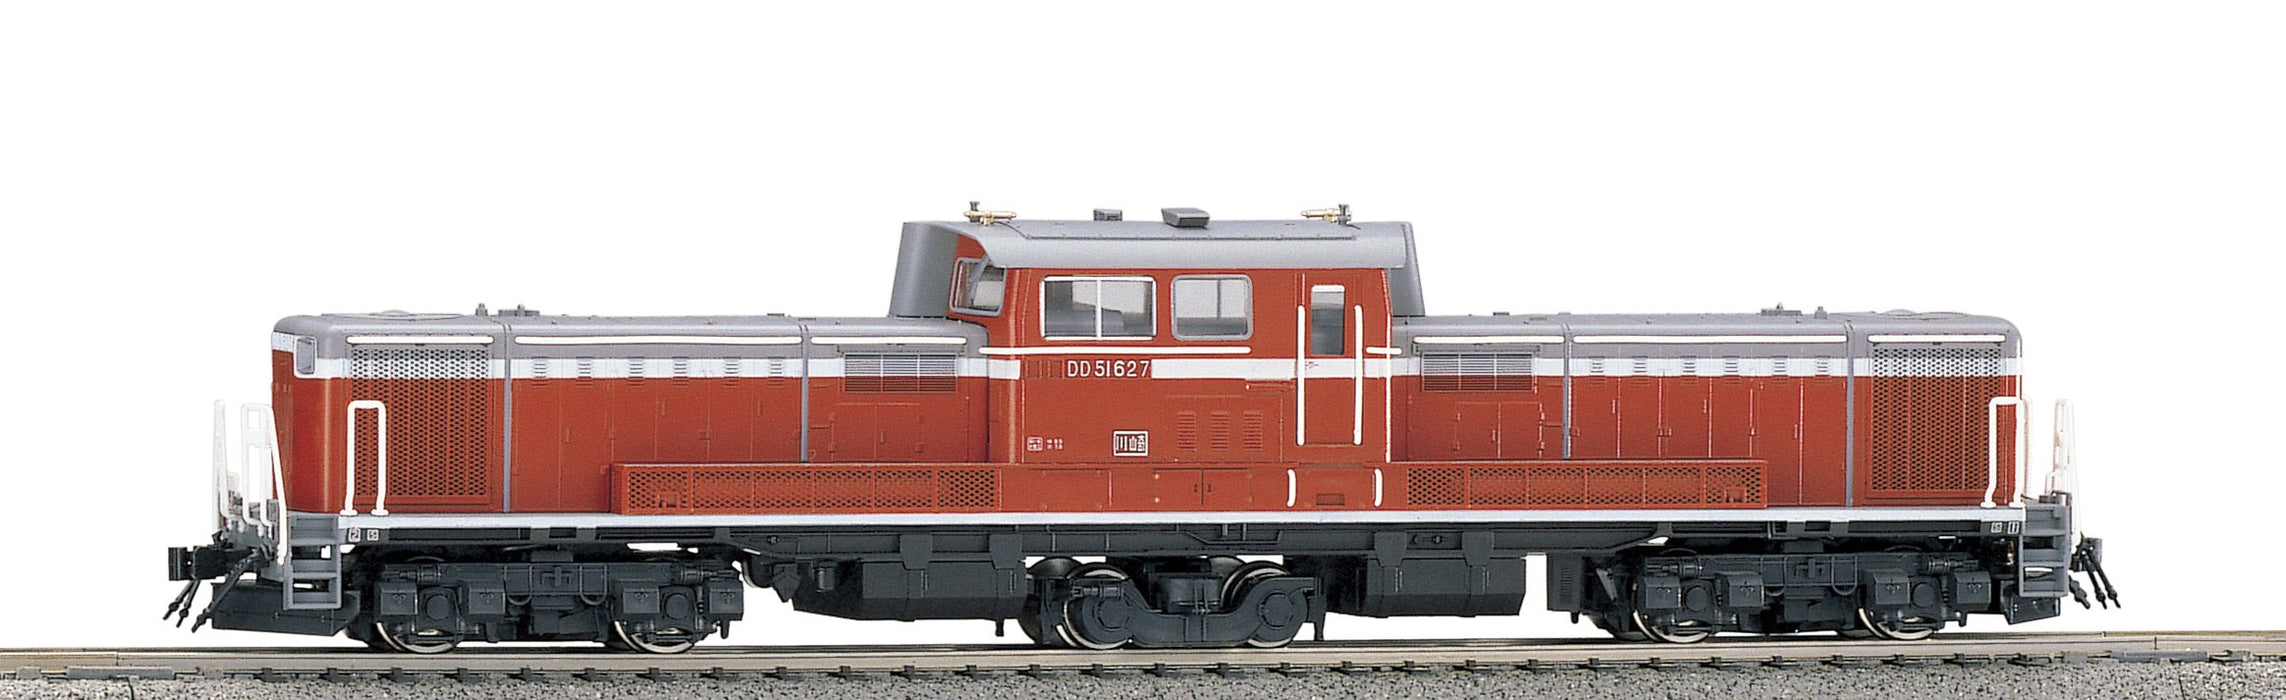 Kato Ho Gauge Warm Terrain Diesel Locomotive Model 1-702 Railway Train